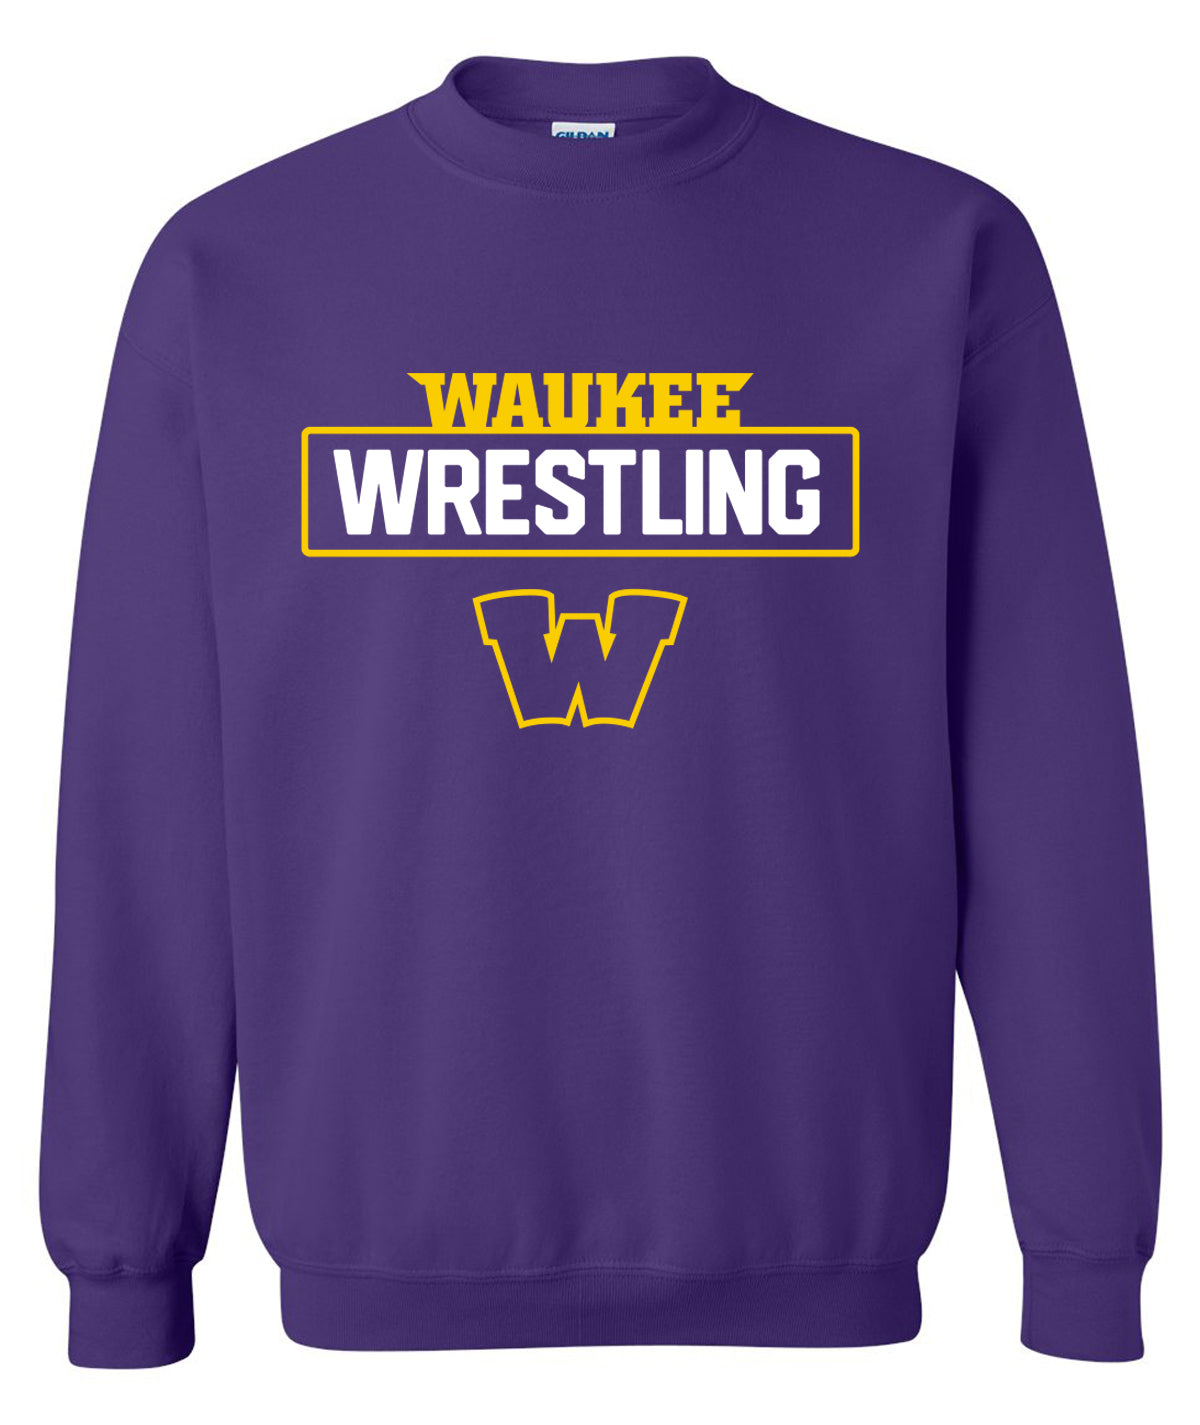 Warriors Wrestling Crewneck Sweatshirt